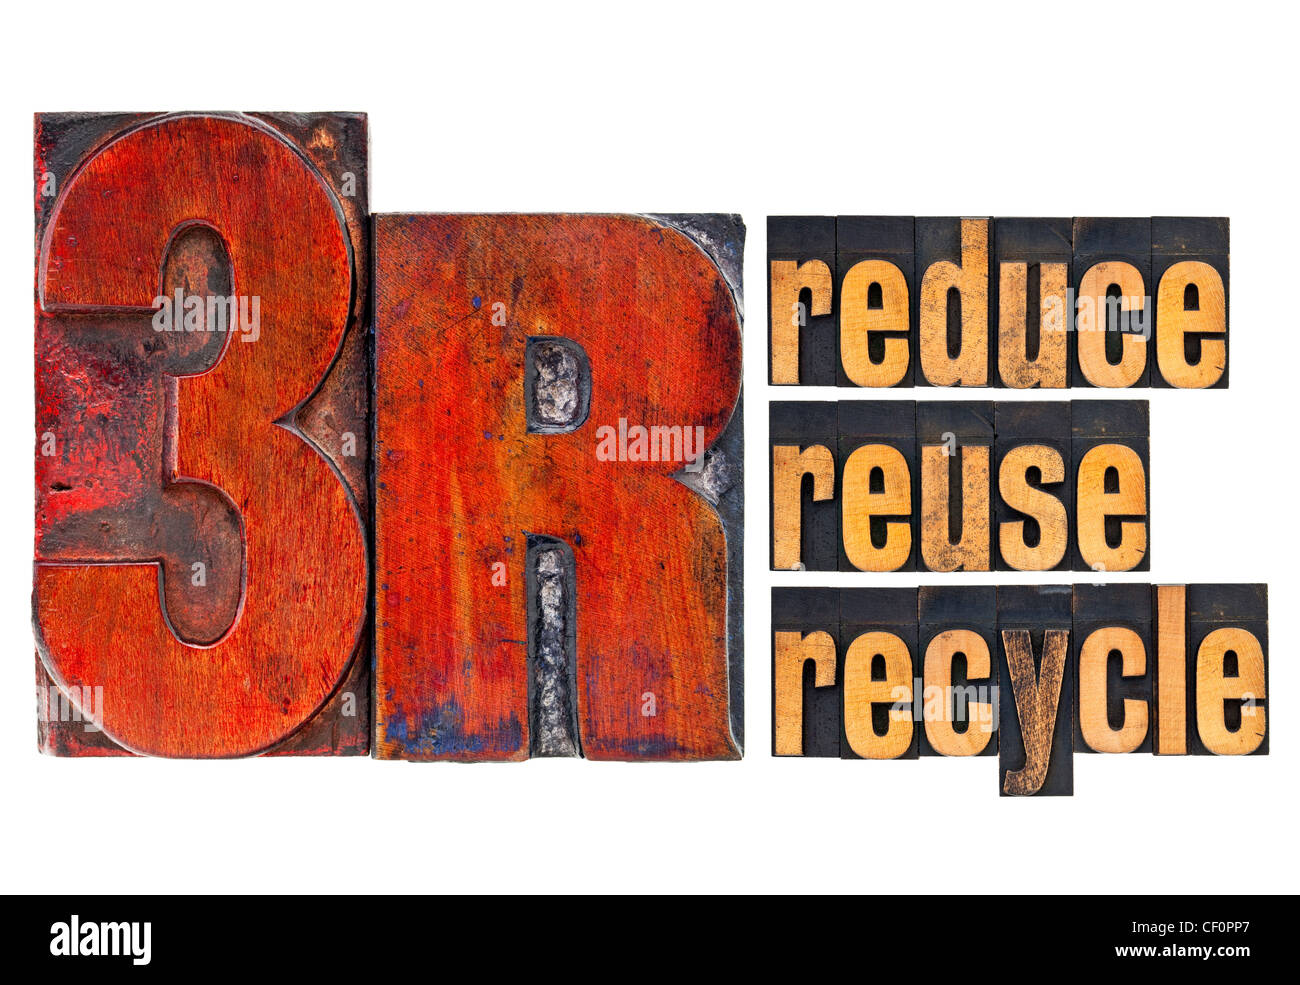 Reducir, Reutilizar, Reciclar - 3r concepto - un collage de palabras aisladas en vintage tipografía tipo de madera Foto de stock